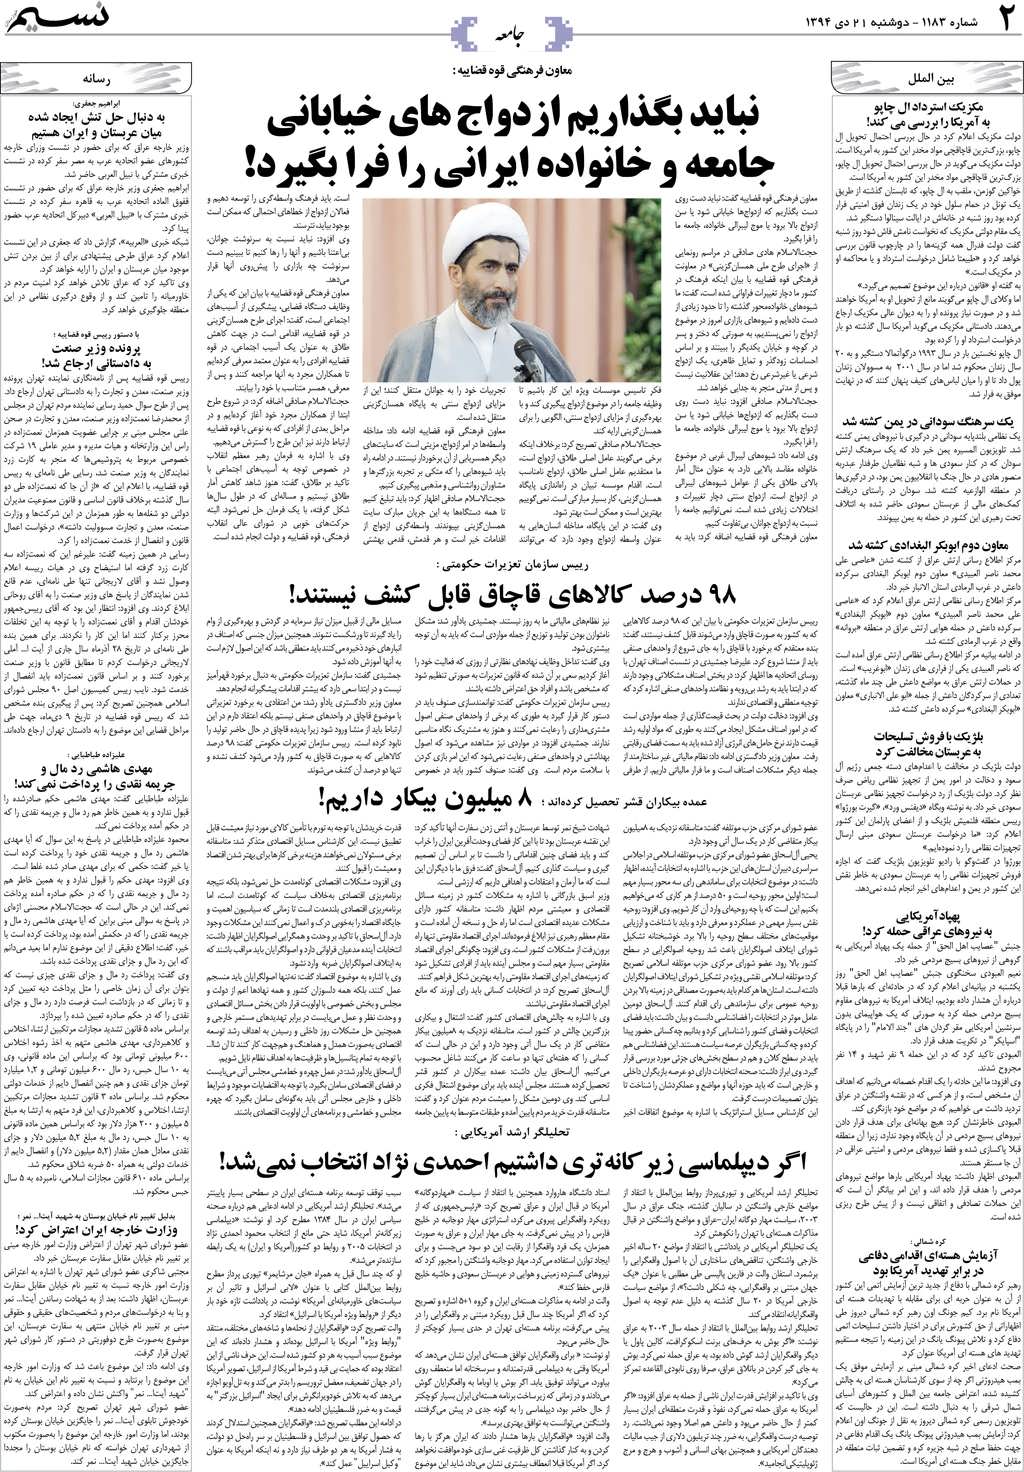 صفحه جامعه روزنامه نسیم شماره 1183